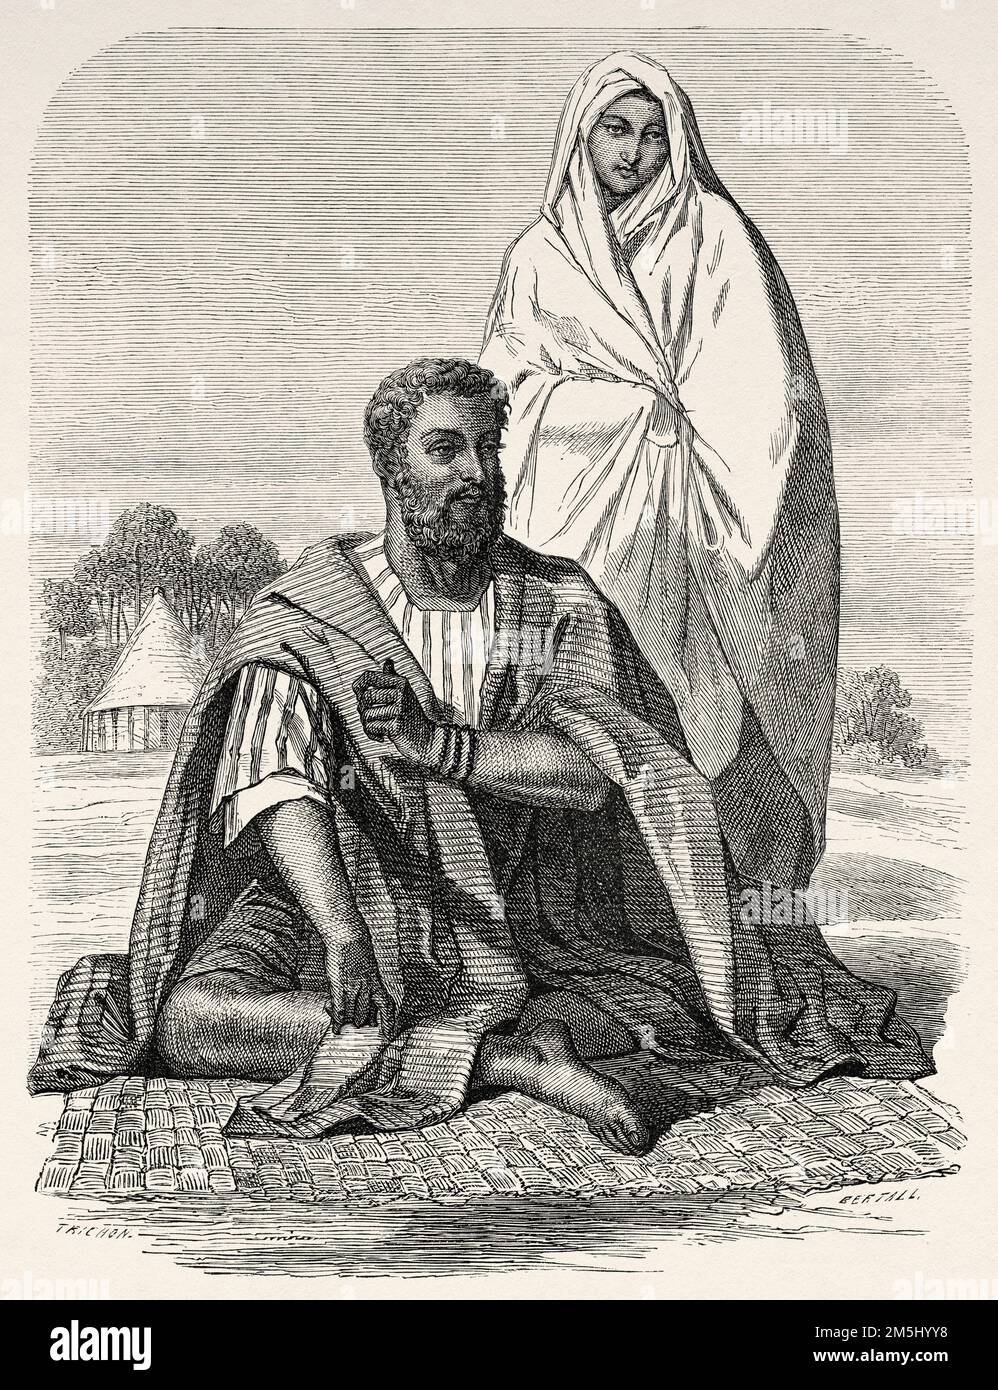 Moor et femme trarzas, Sénégal. Afrique de l'Ouest. Voyages et expéditions au Sénégal et dans les pays voisins. Excursion militaire et géographique à l'est de Gorée dans les pays de Sine et Saloum 1859 Banque D'Images